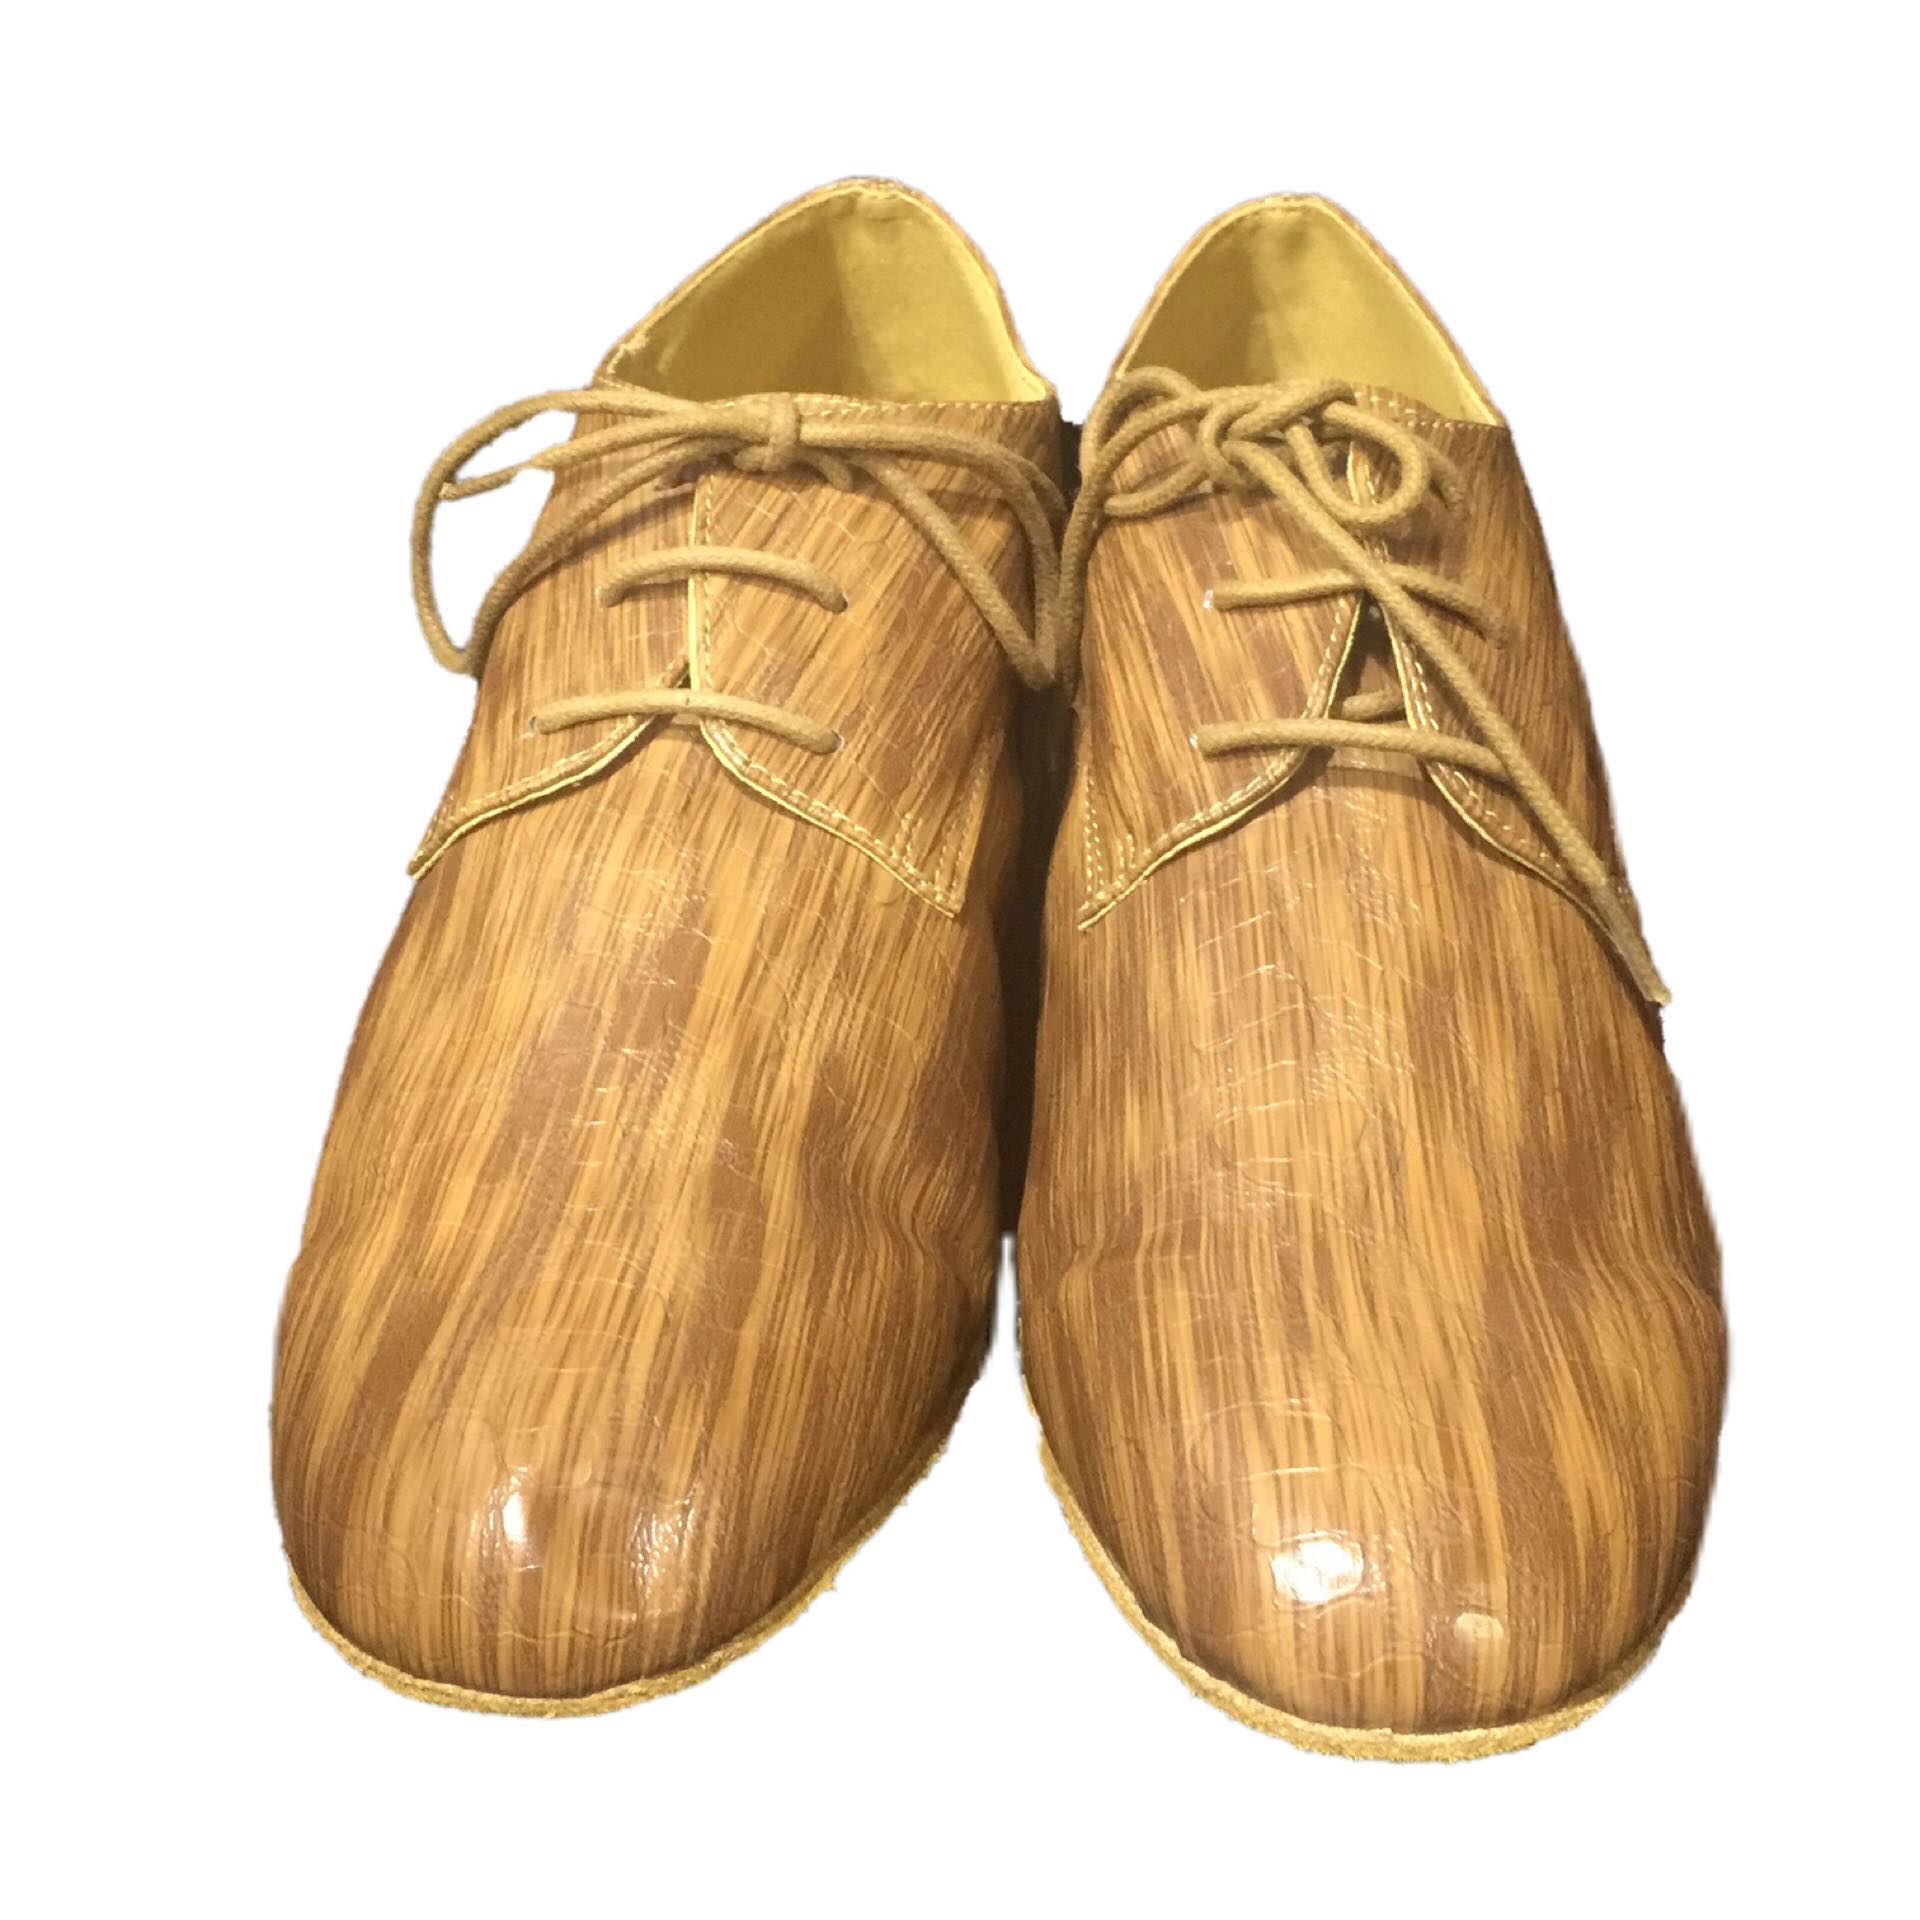 Help Me Dance Men's Modern Shoes / Ballroom Shoes Leather Lace-up Heel Thick Heel Dance Shoes Plain Brown - Simpal Boutique